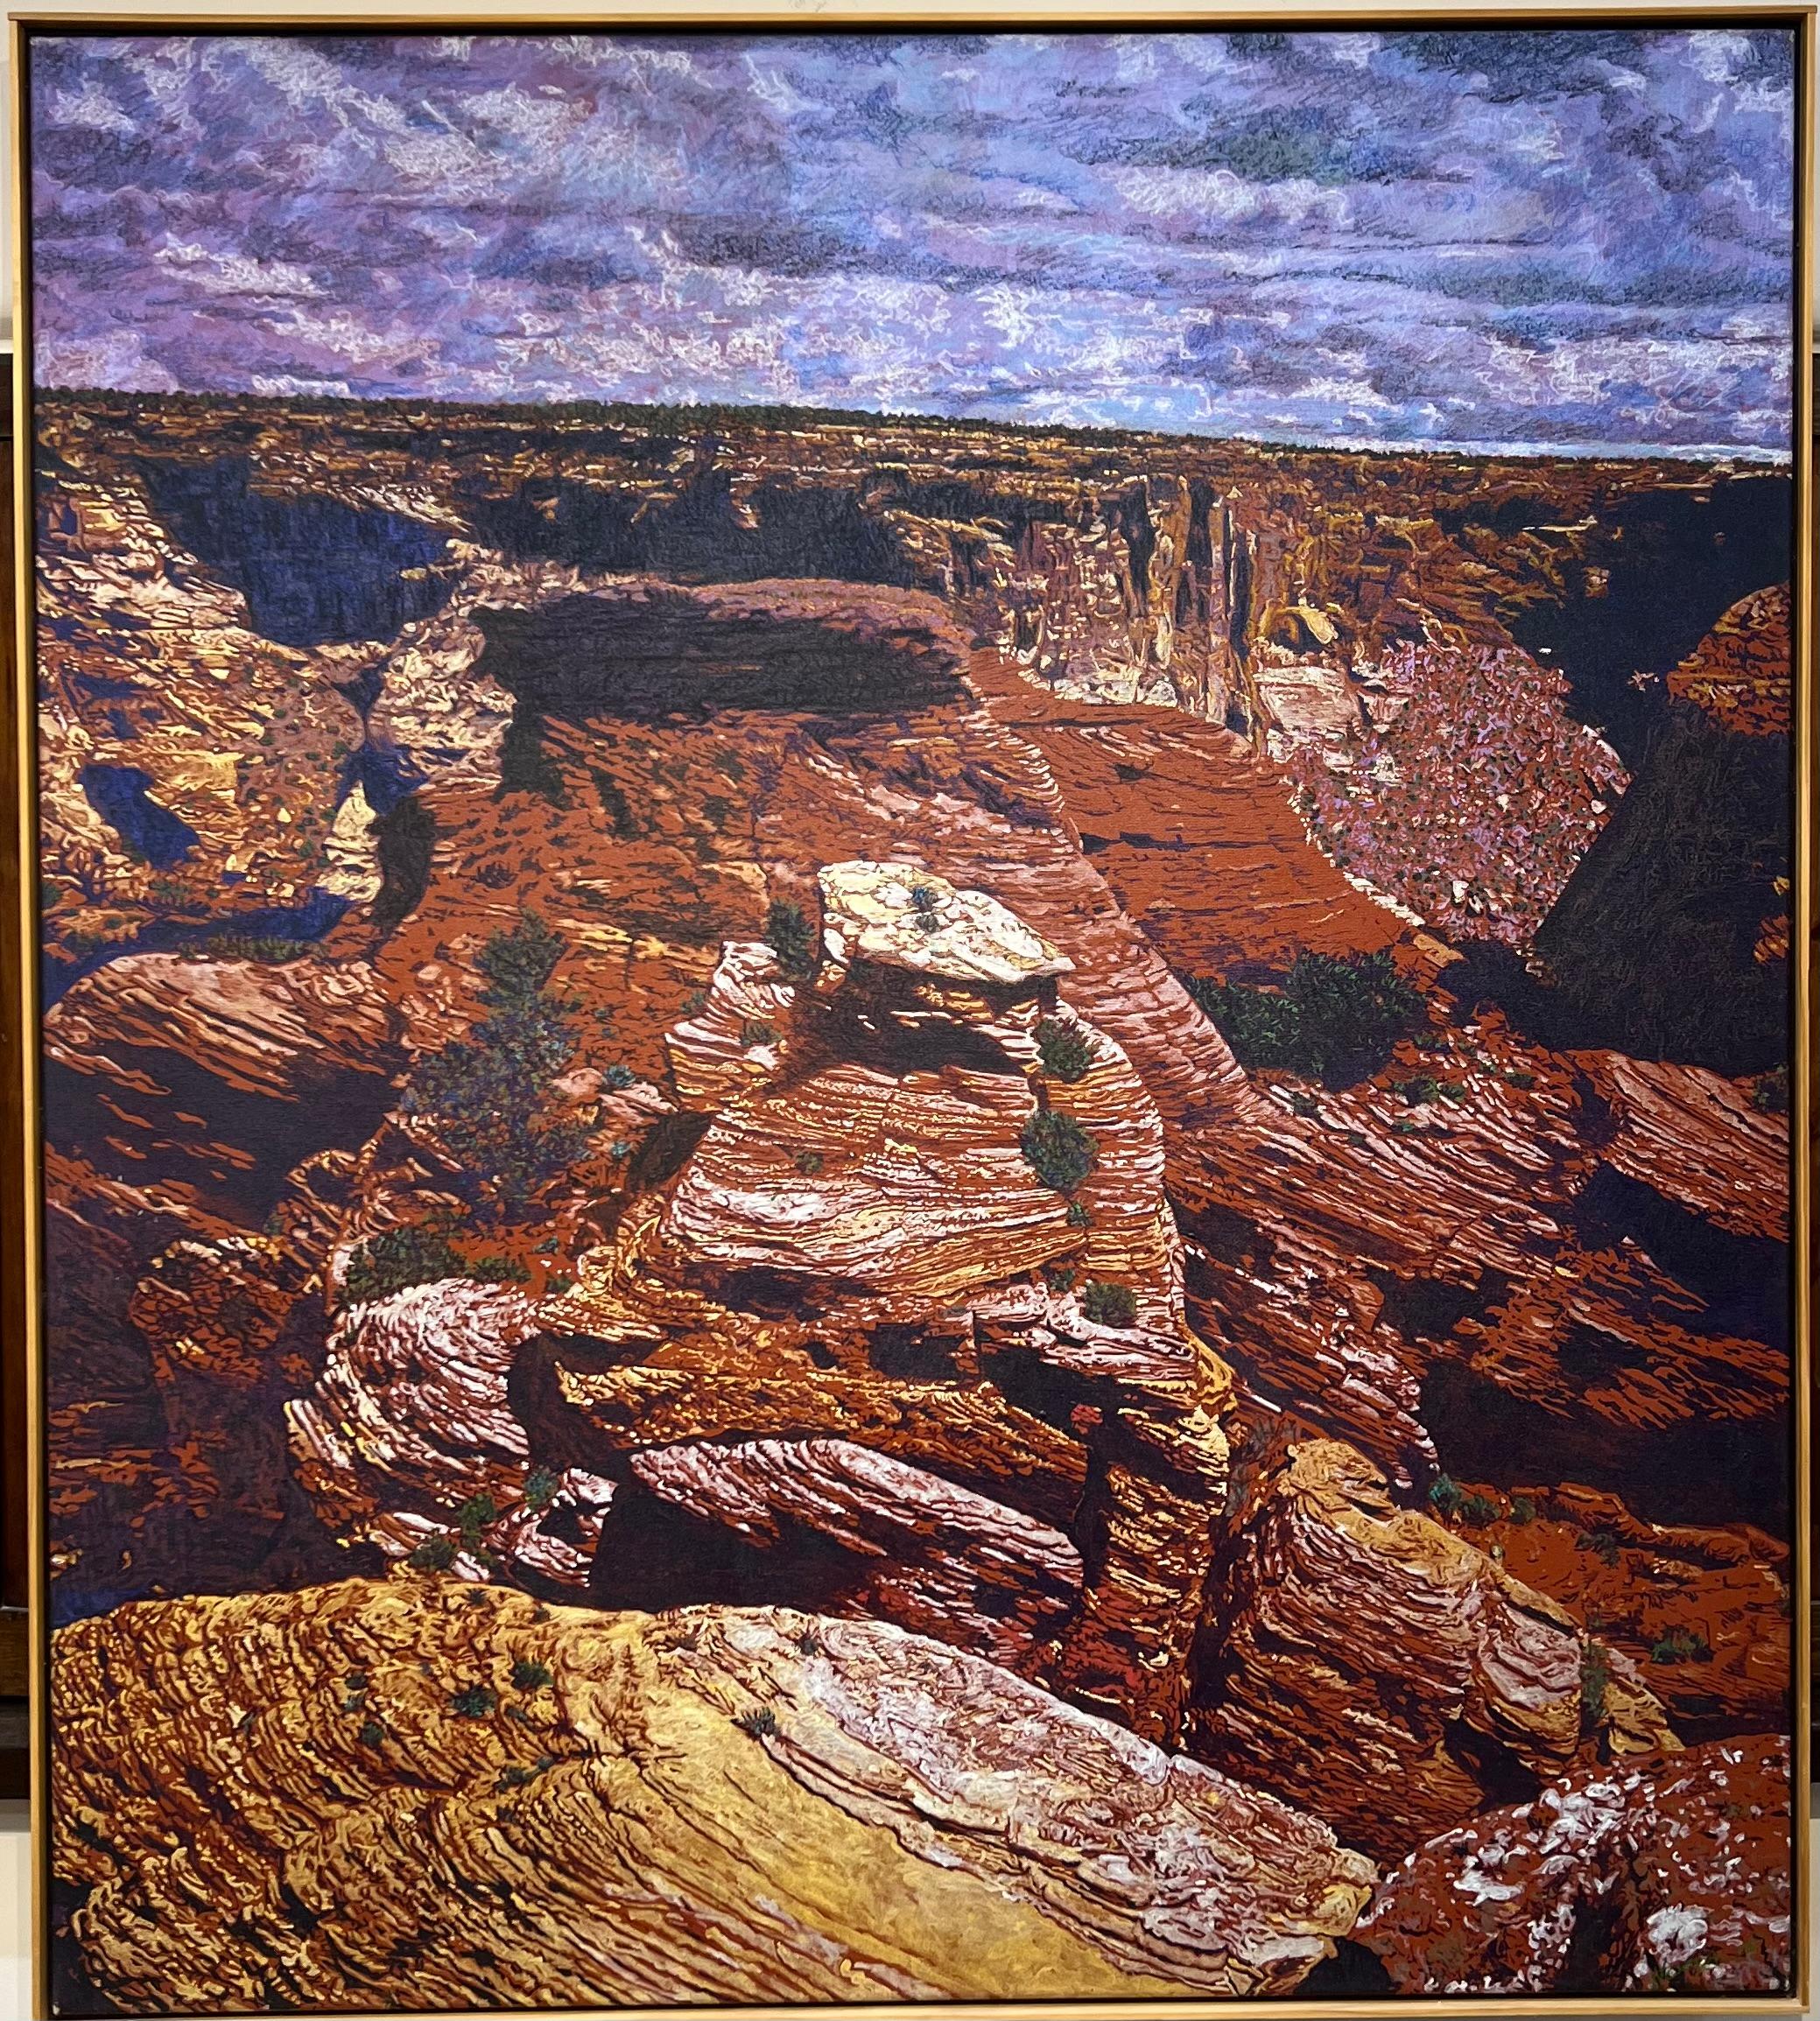 Canyon et nuages, peinture de paysage désertique, rouge, violet, brun John Hogan

Peinture de paysage désertique du sud-ouest avec des couleurs et des textures riches. 

John Hogan

Diplômé de la Northeast Louisiana State University avec une licence